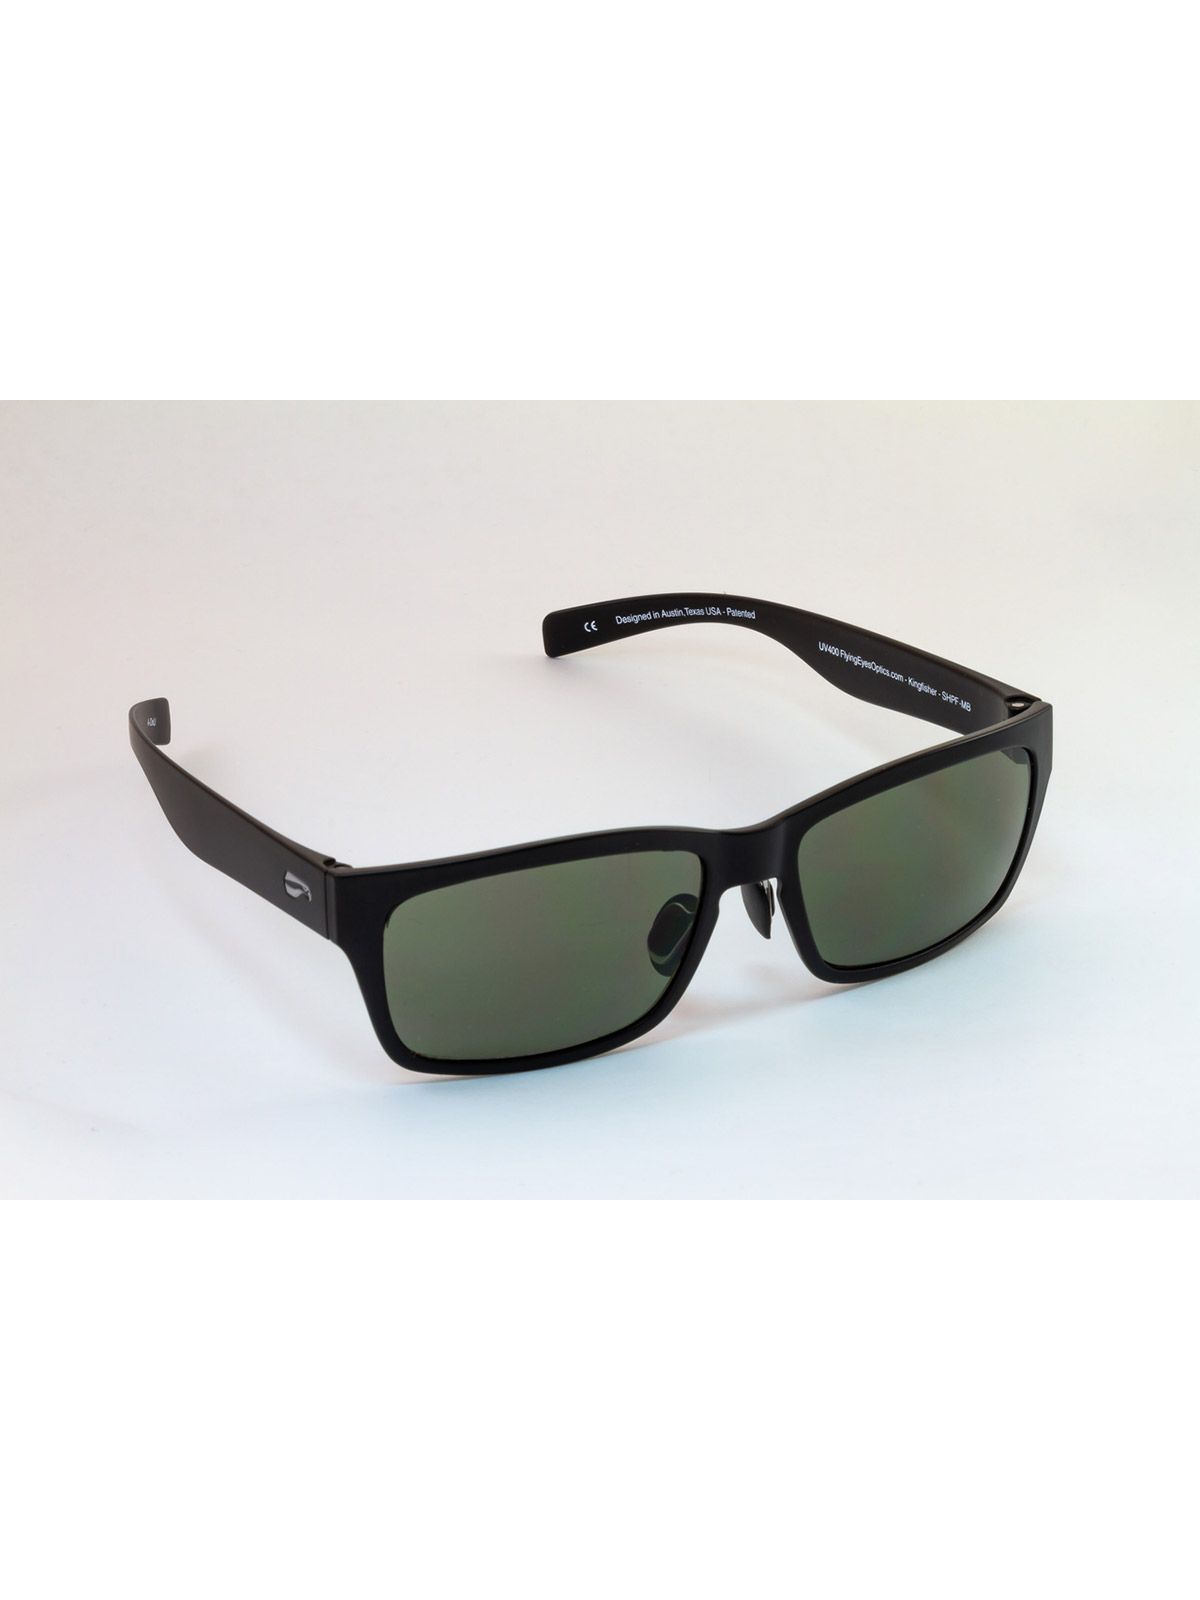 Flying Eyes Sonnenbrille Kingfisher - Rahmen matt-schwarz, Linsen G15 (neutrales Grün)